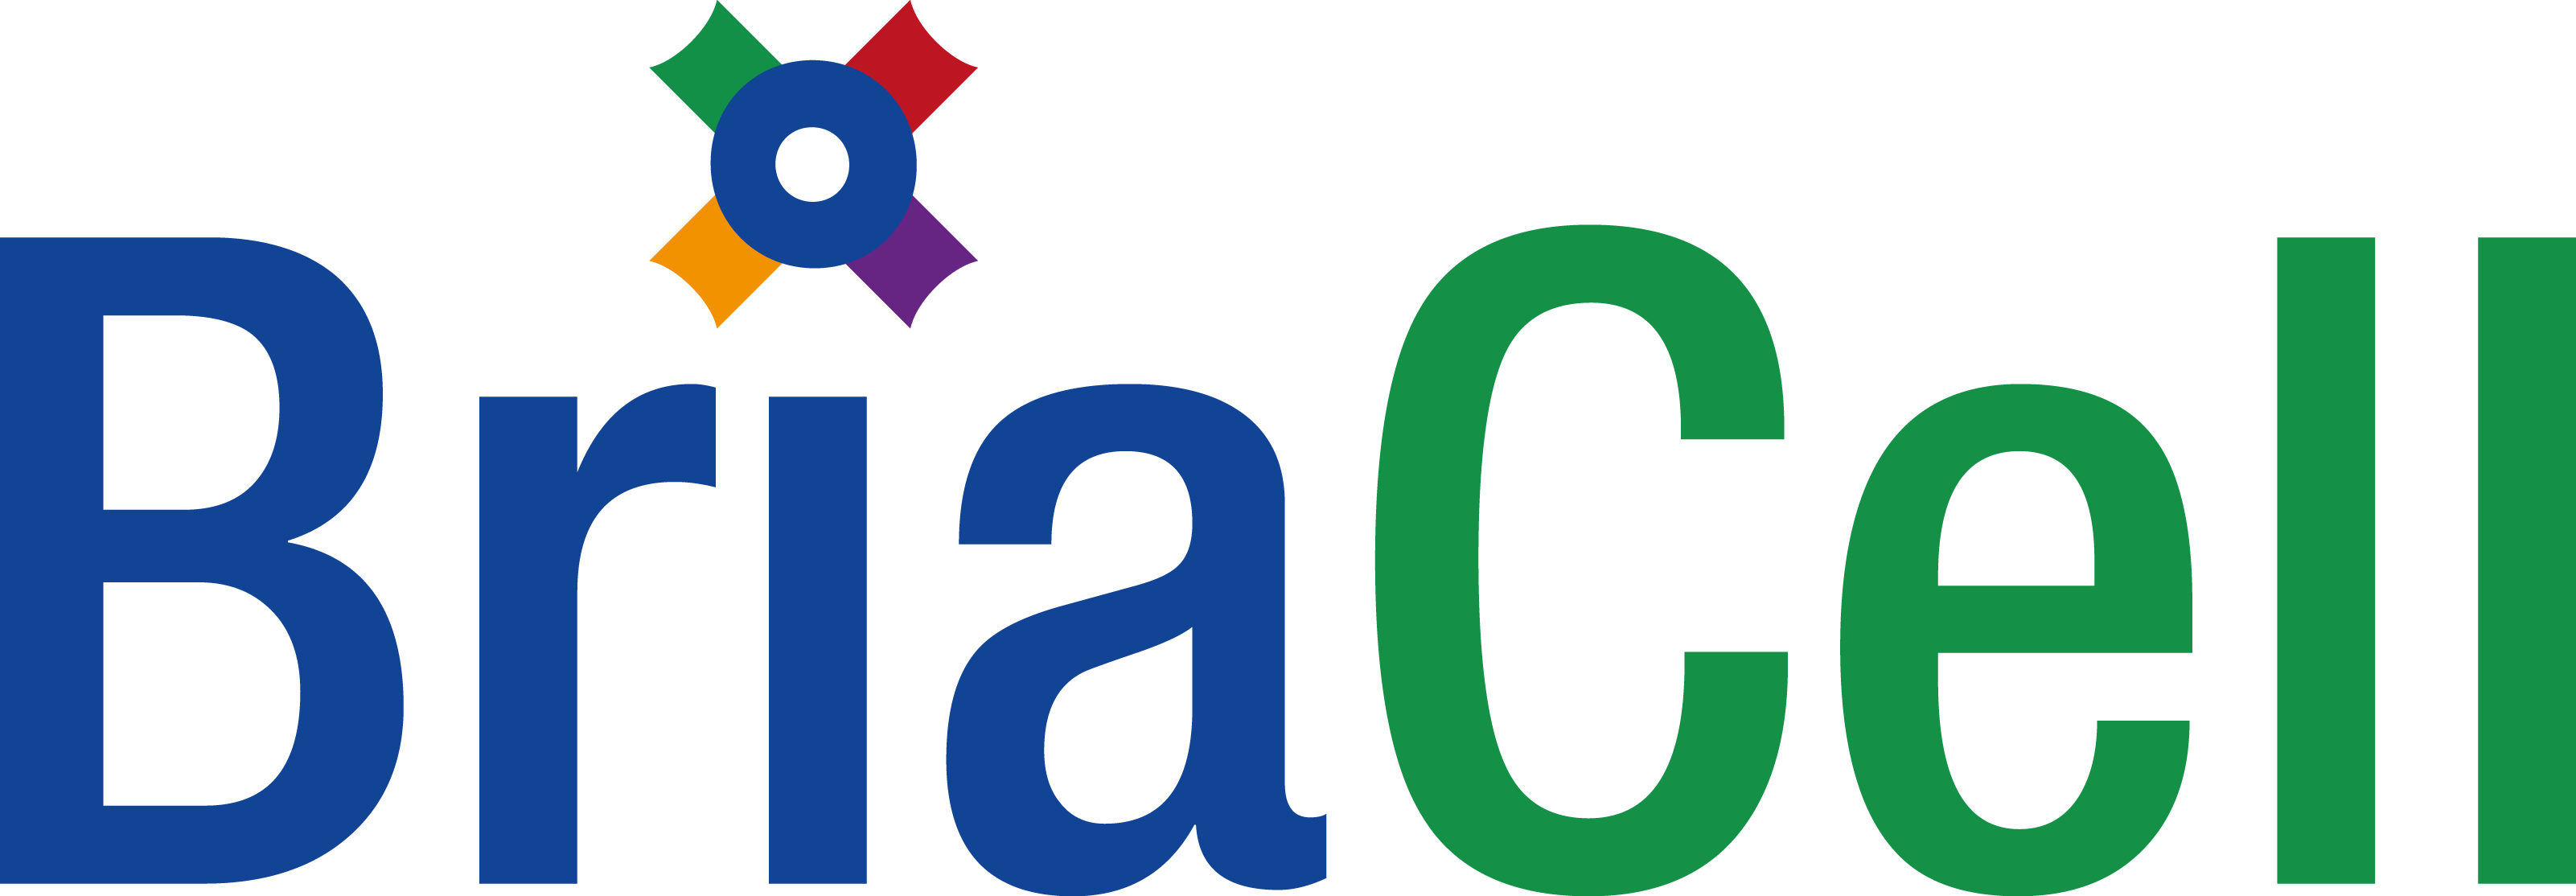 BriaCell-logo.png